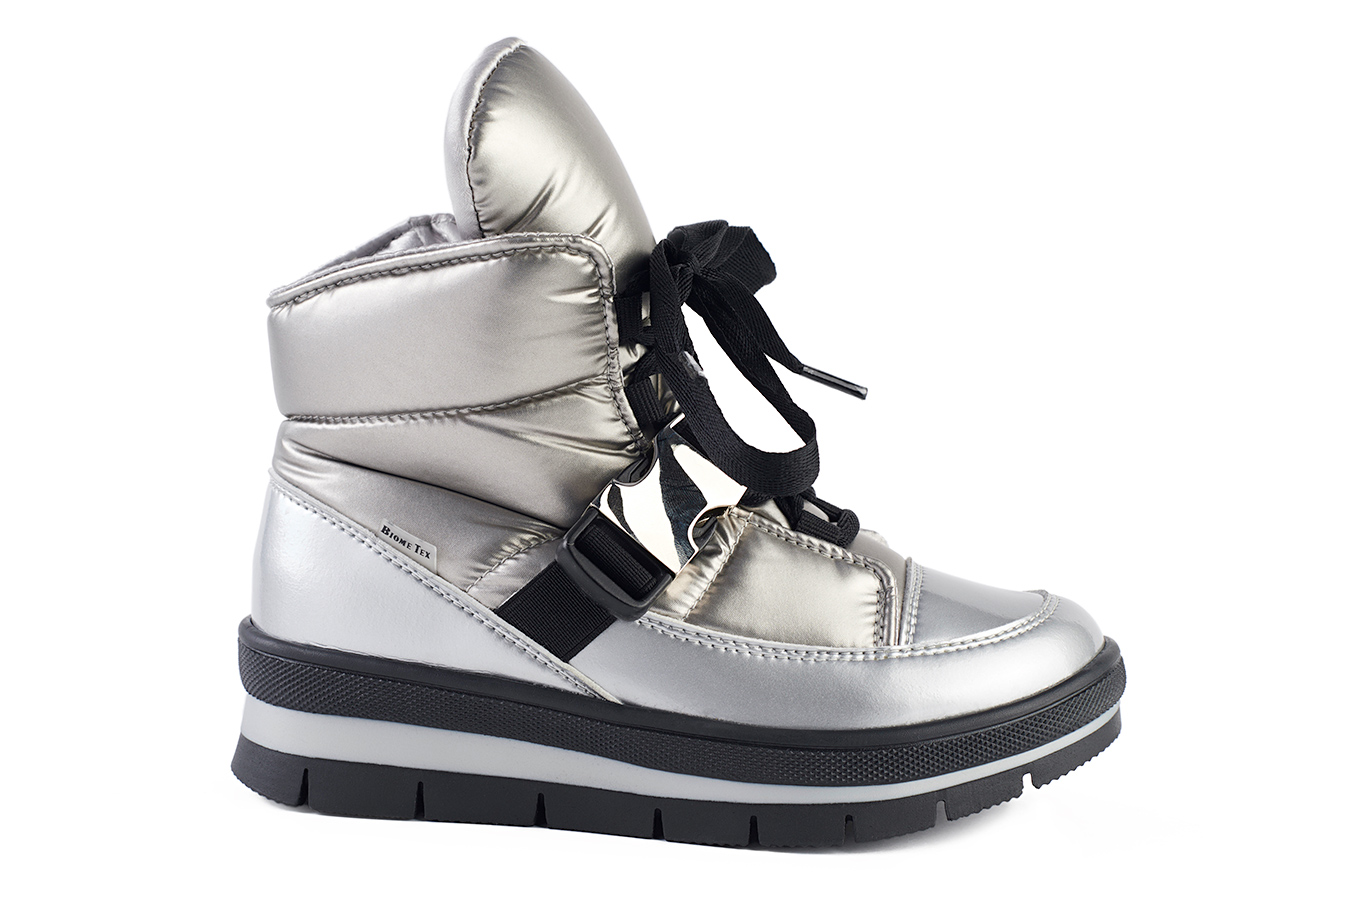 ботинки 14052R серебряный балтико, фото 1